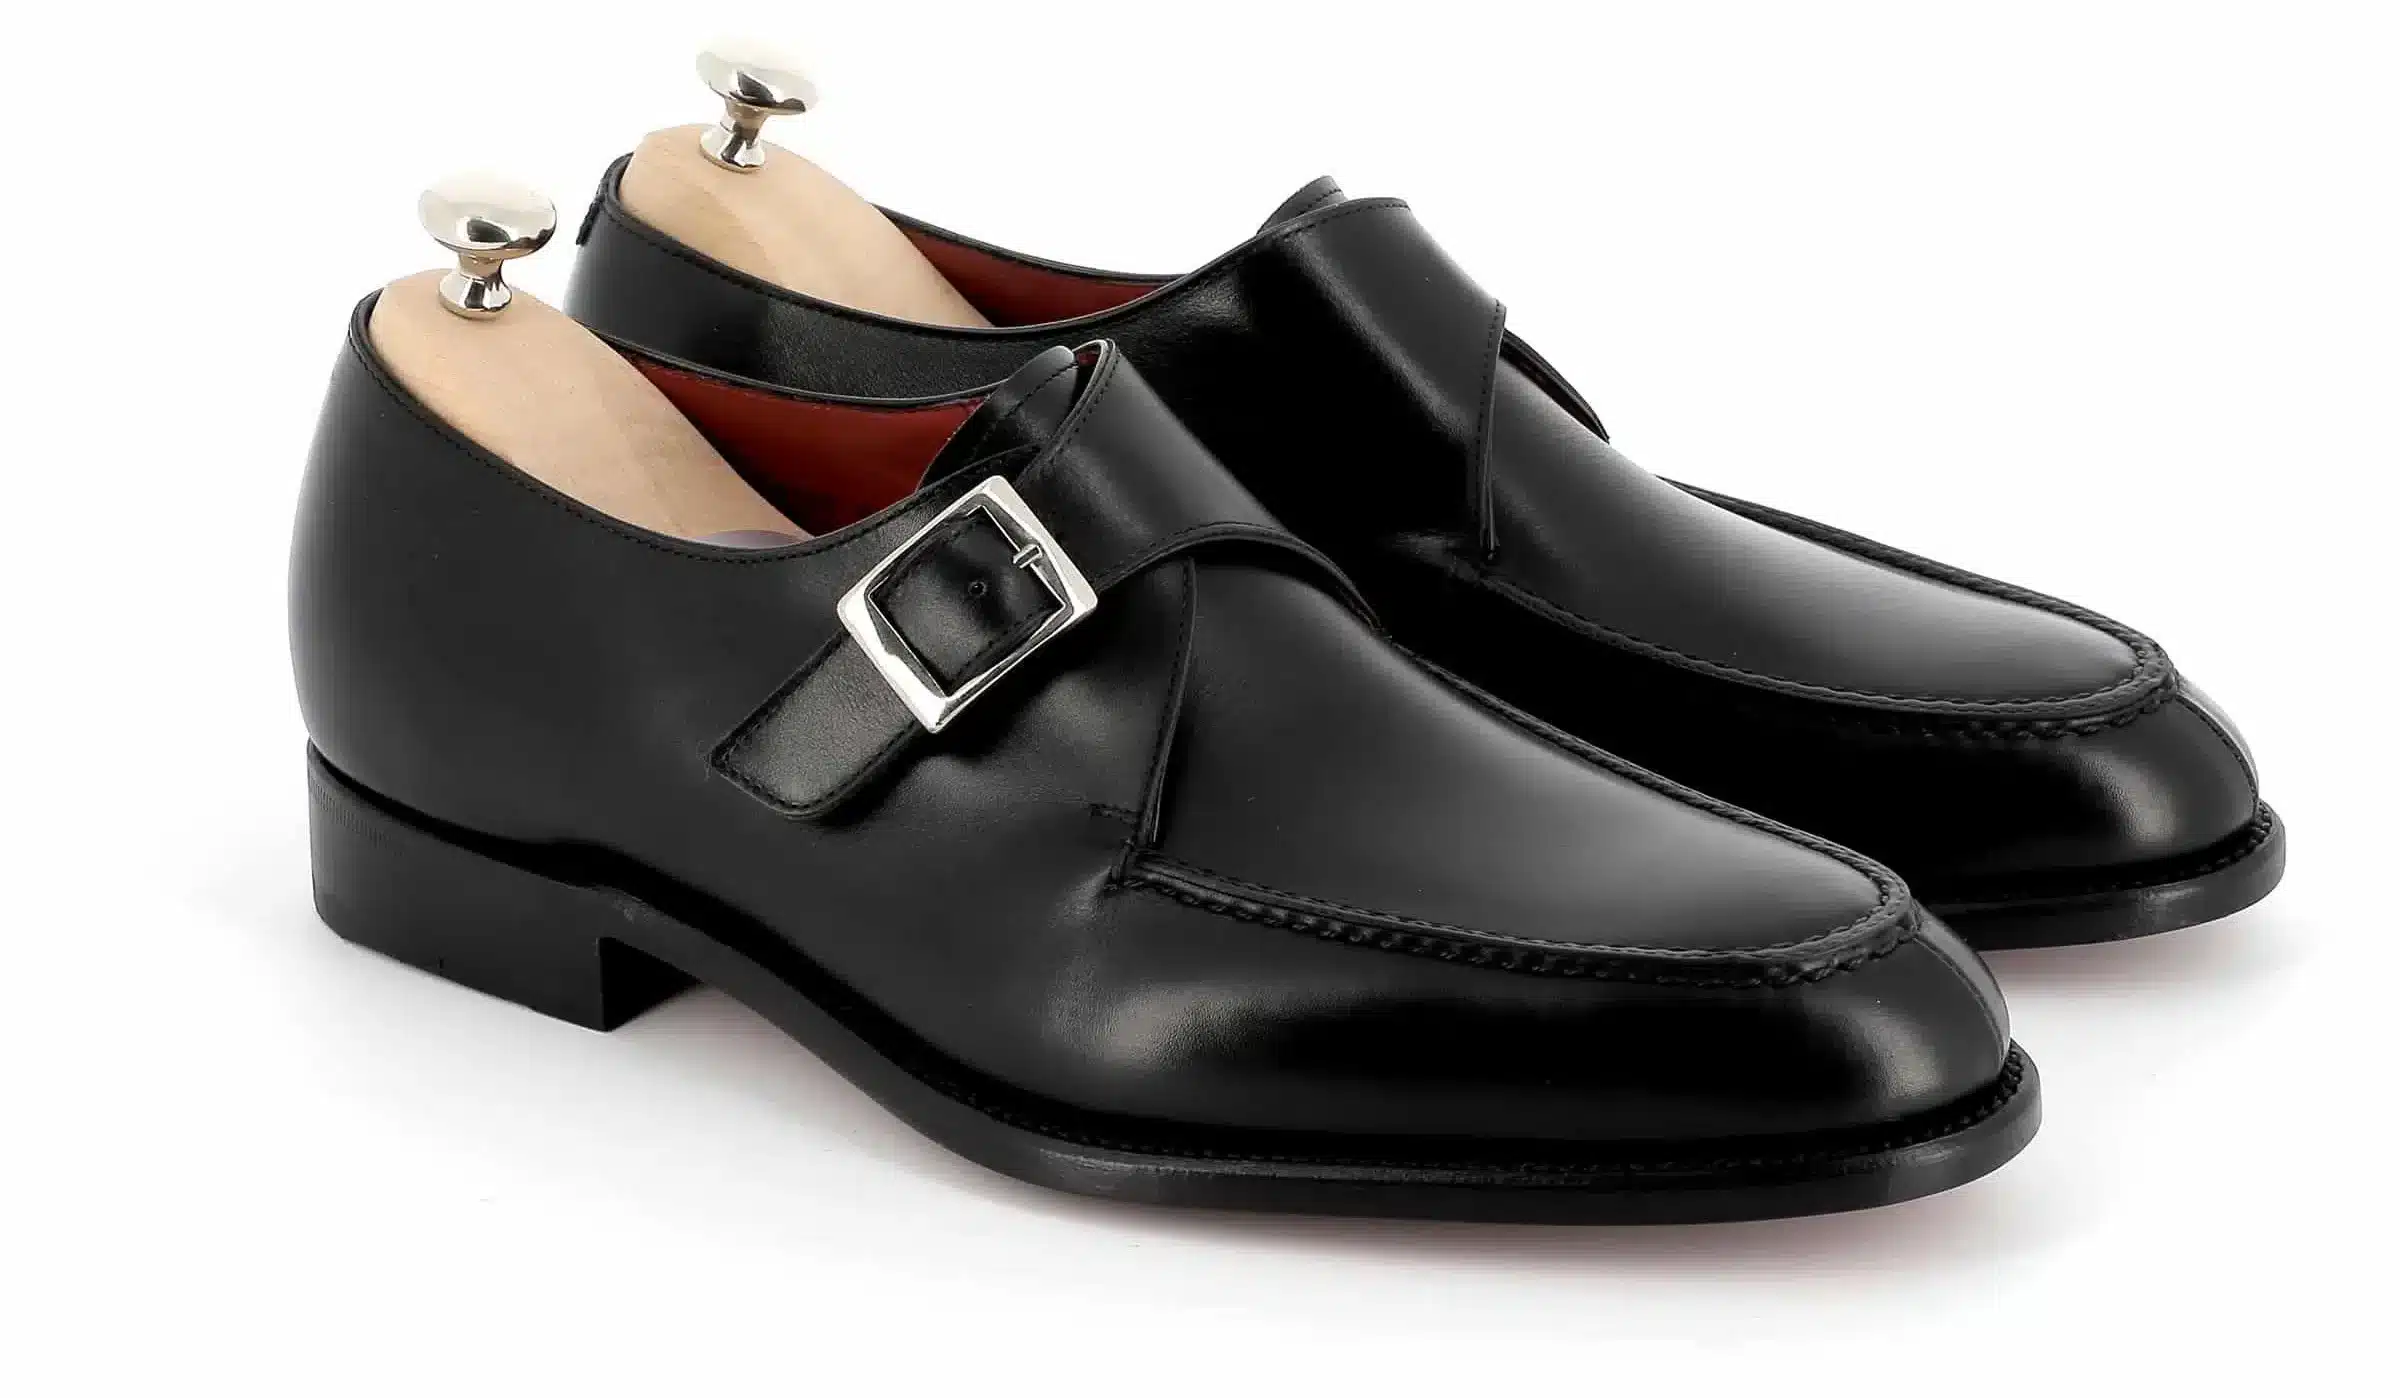 Chaussures à boucle Douglas cuir noir semelles cuir